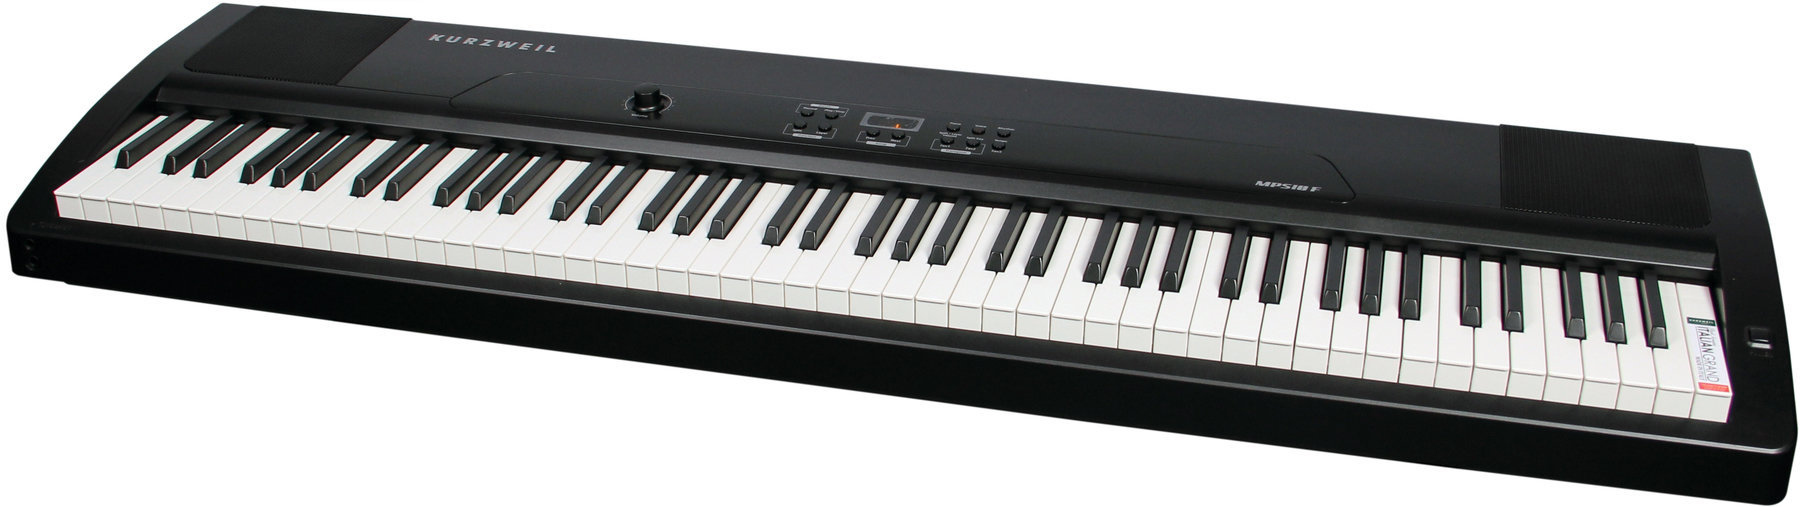 Ψηφιακό Stage Piano Kurzweil MPS10F Portable Digital Piano